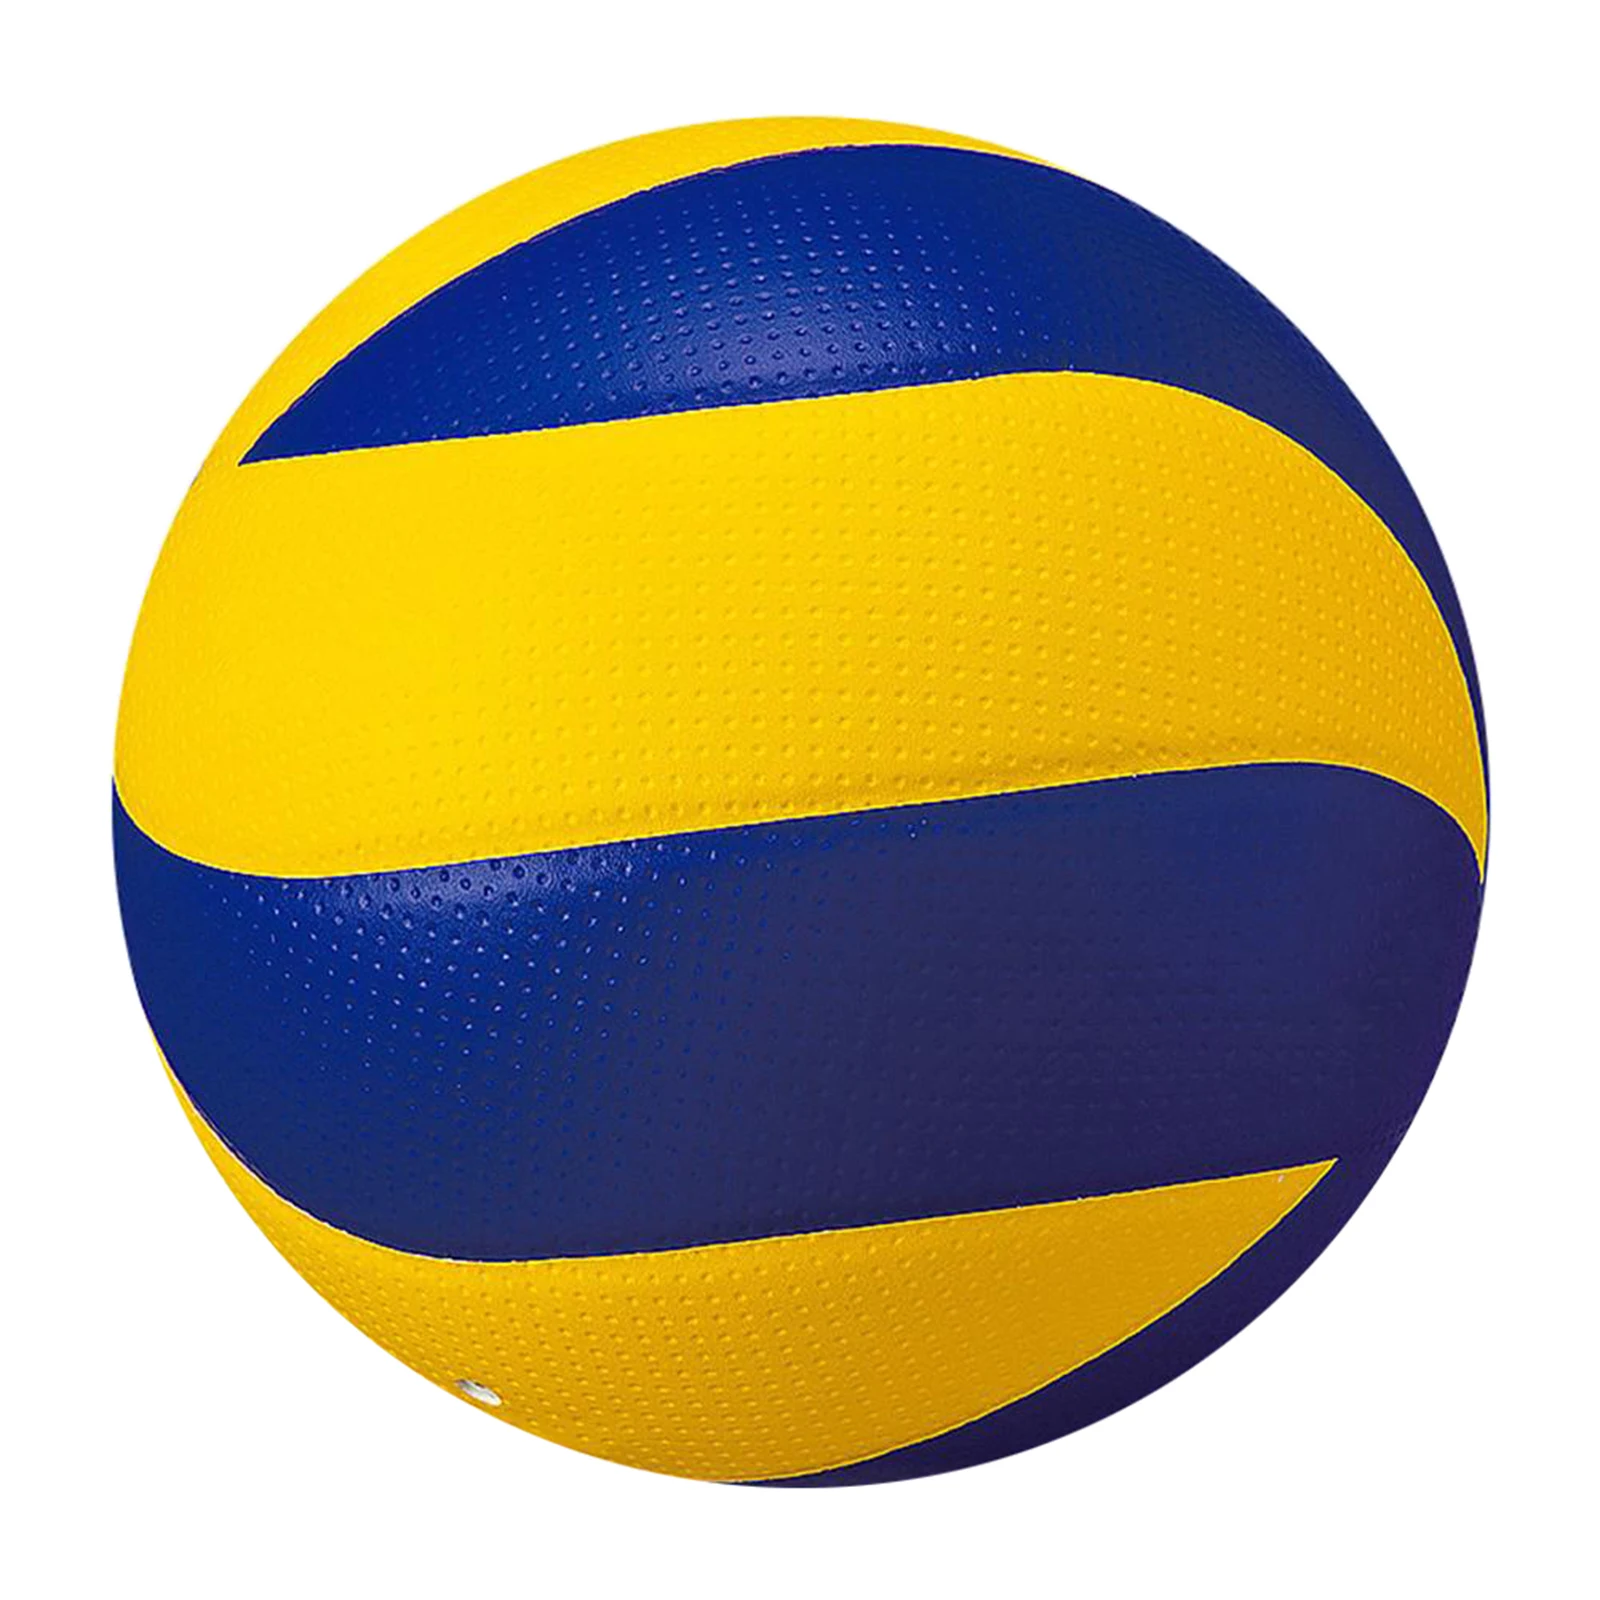 Heiße gute Schüler-Volleyball-Kunstleder-Match-Trainings-Ball verdickte Size  W0 